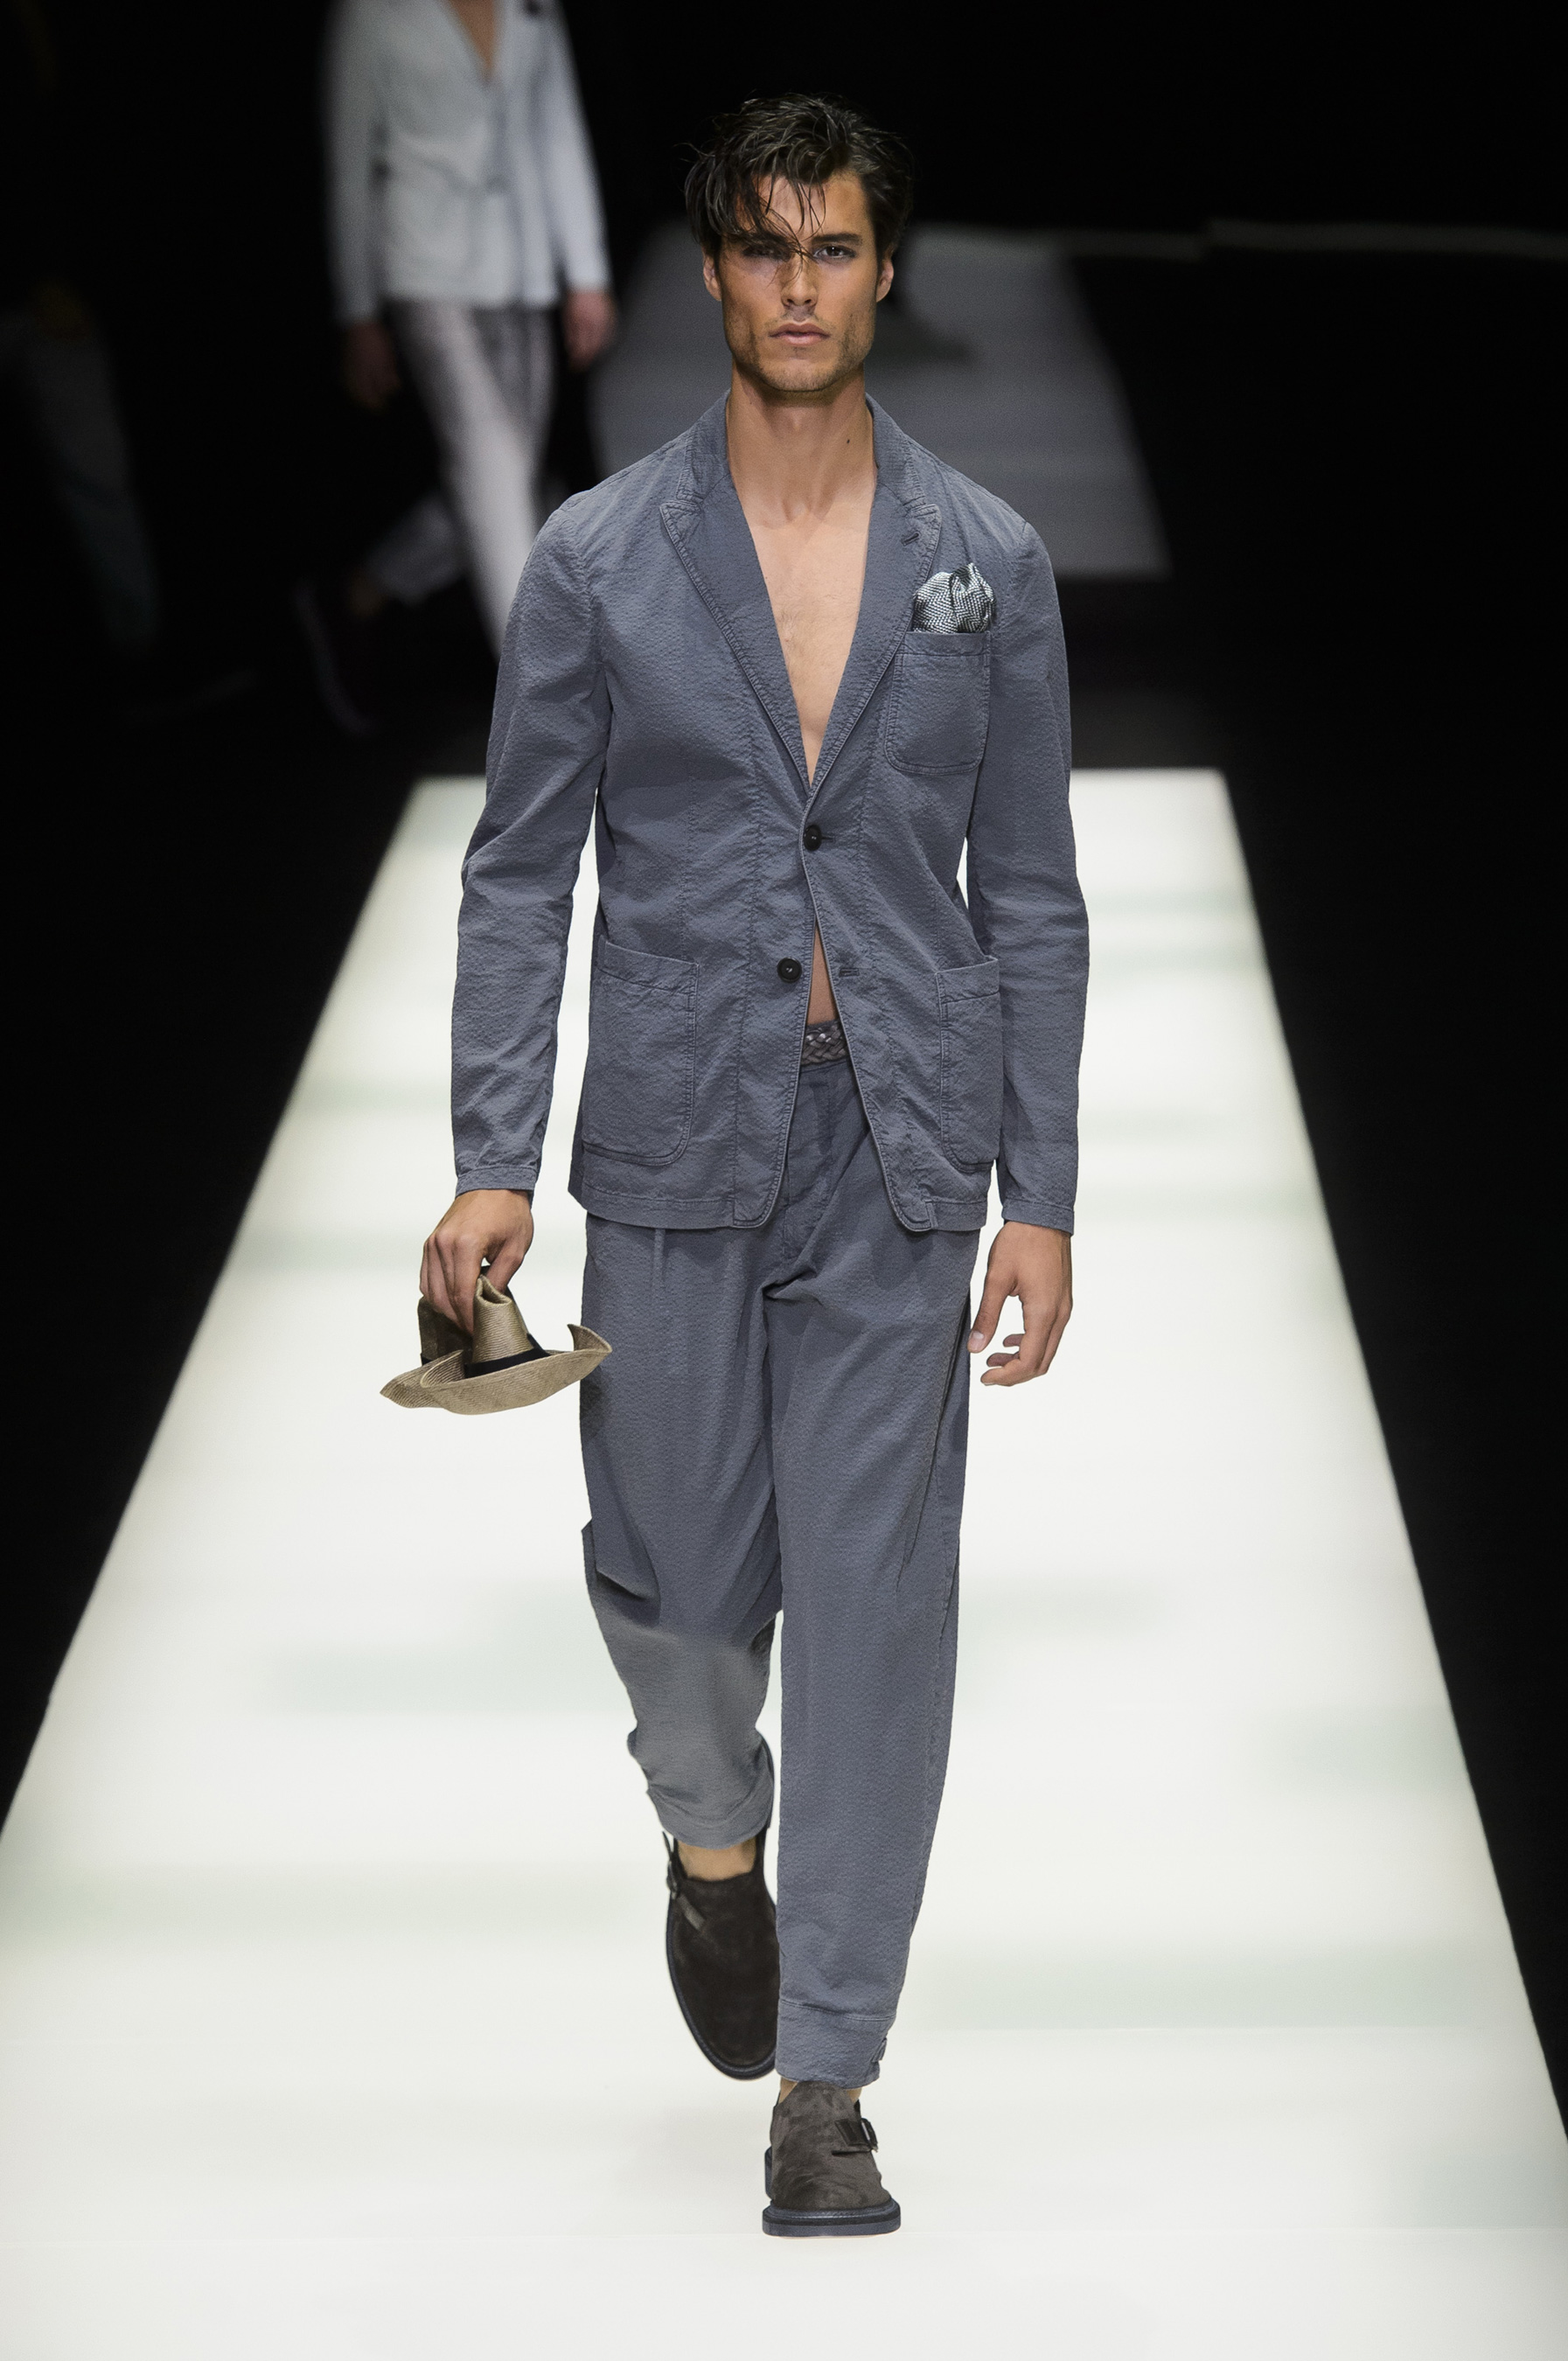 Giorgio Armani Spring 2018 Men's Fashion Show - The Impression